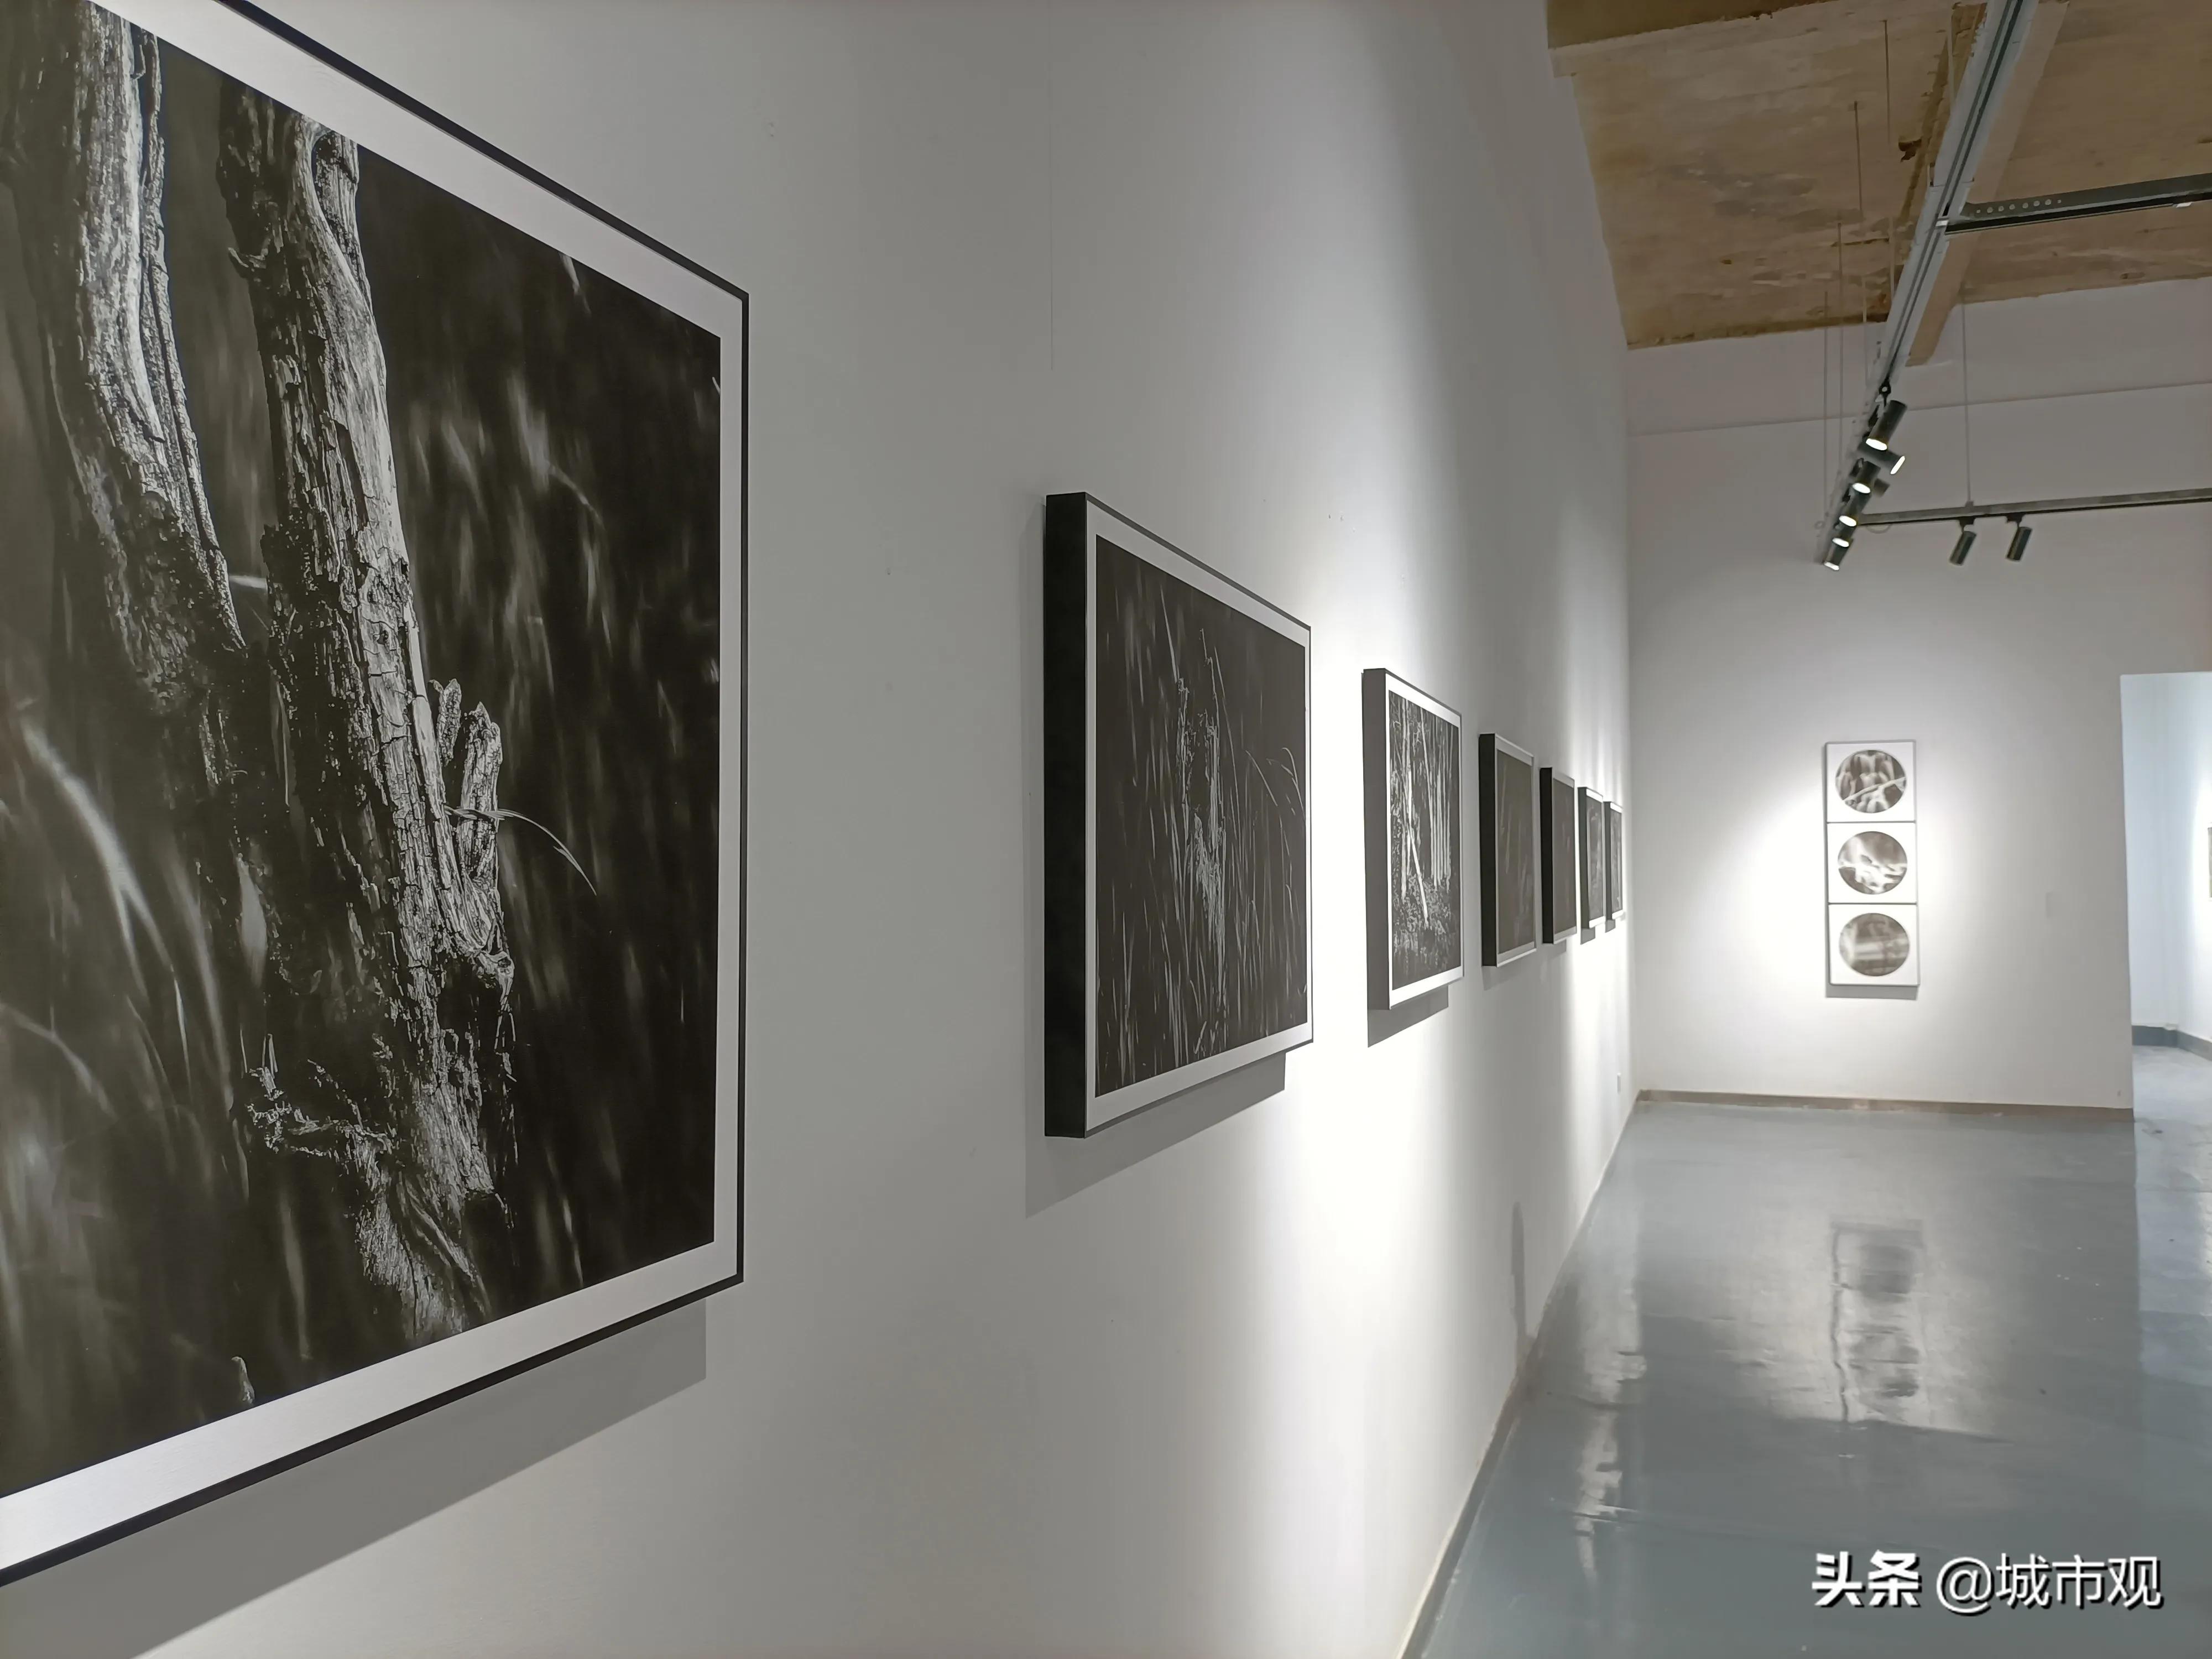 大展黔图《一轮·素念禅心》黄驿伦摄影作品在贵州师大美术馆展出